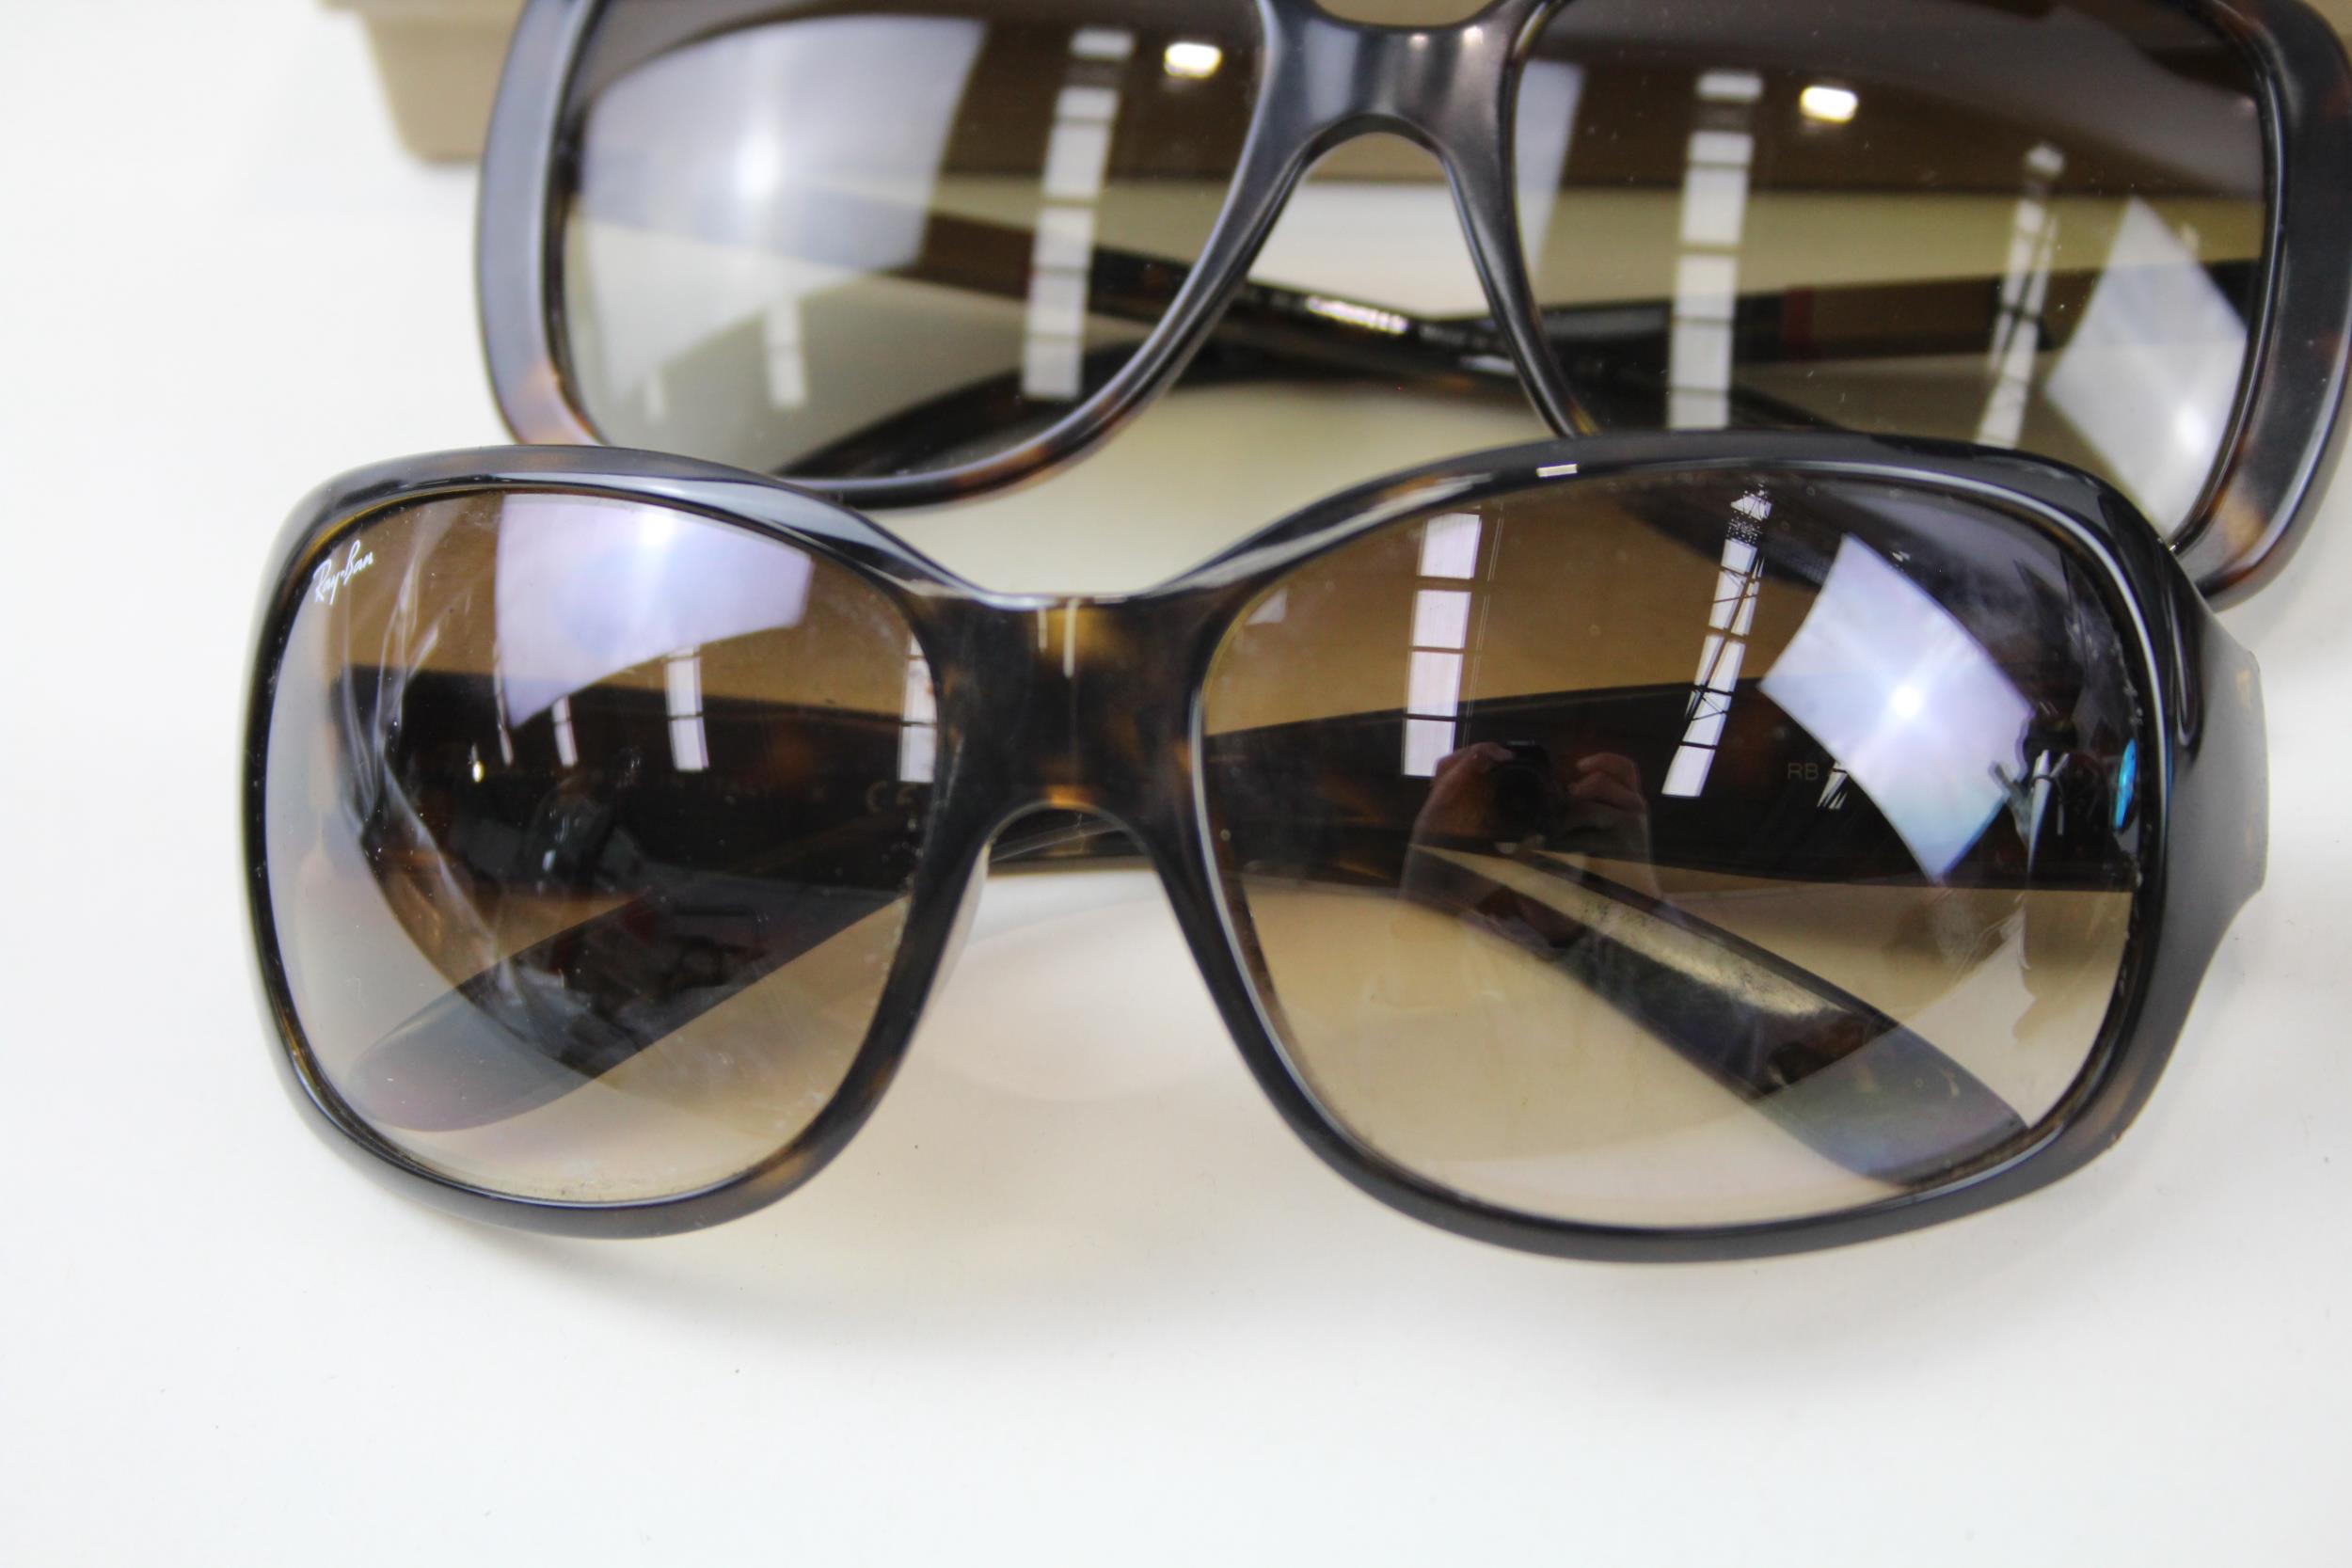 4 x Designer Sunglasses Assorted Inc Prada, Burberry, Fendi, Cases, Etc // Items are in previously - Bild 3 aus 7